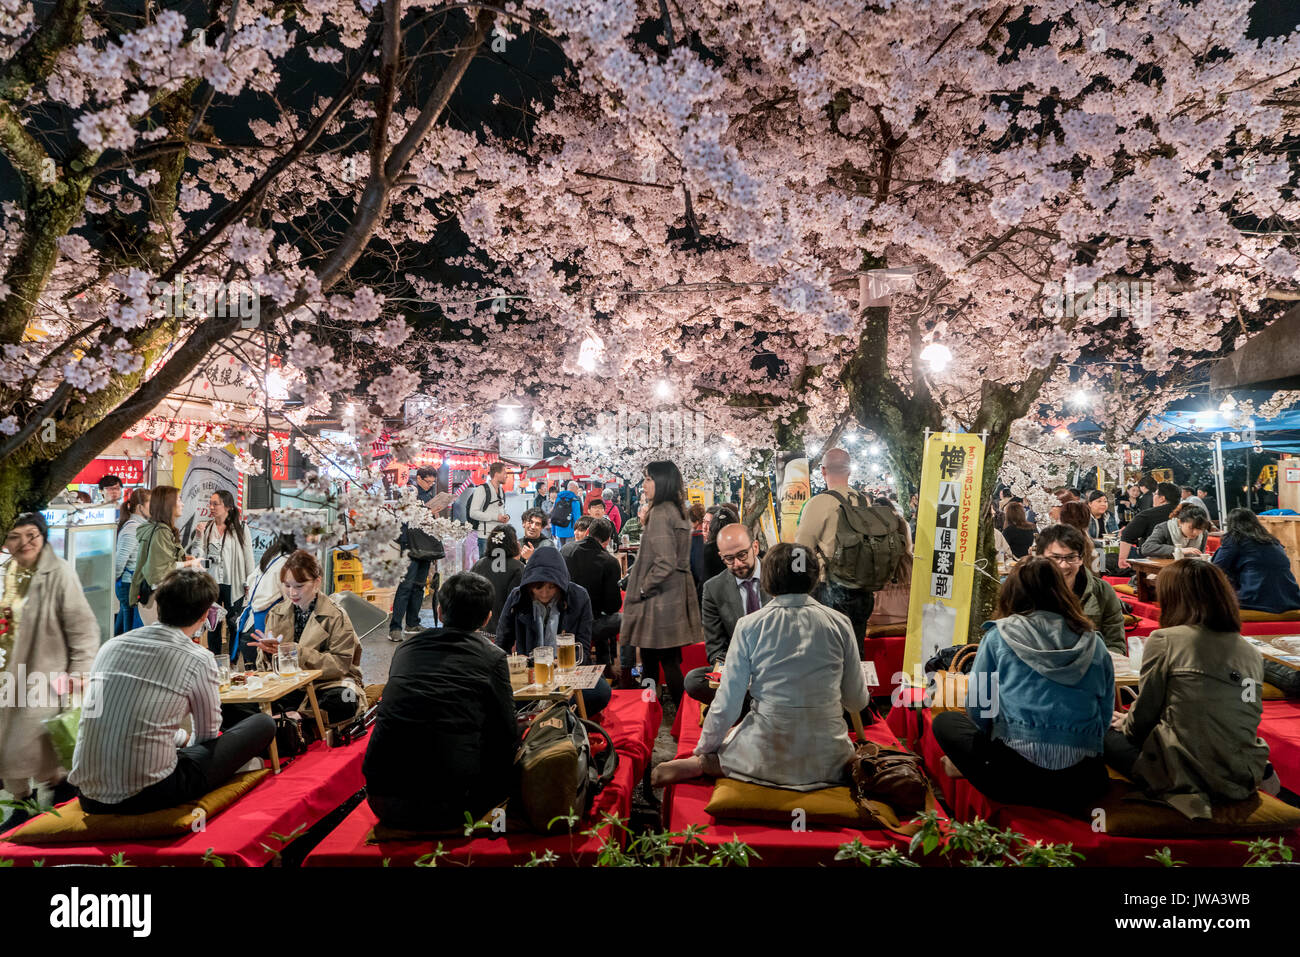 KYOTO, JAPON - 7 avril, 2017 : Japon foule profiter du printemps les cerisiers en fleurs à Kyoto en participant au nuit saisonniers festivals Hanami dans parc Maruyama Banque D'Images